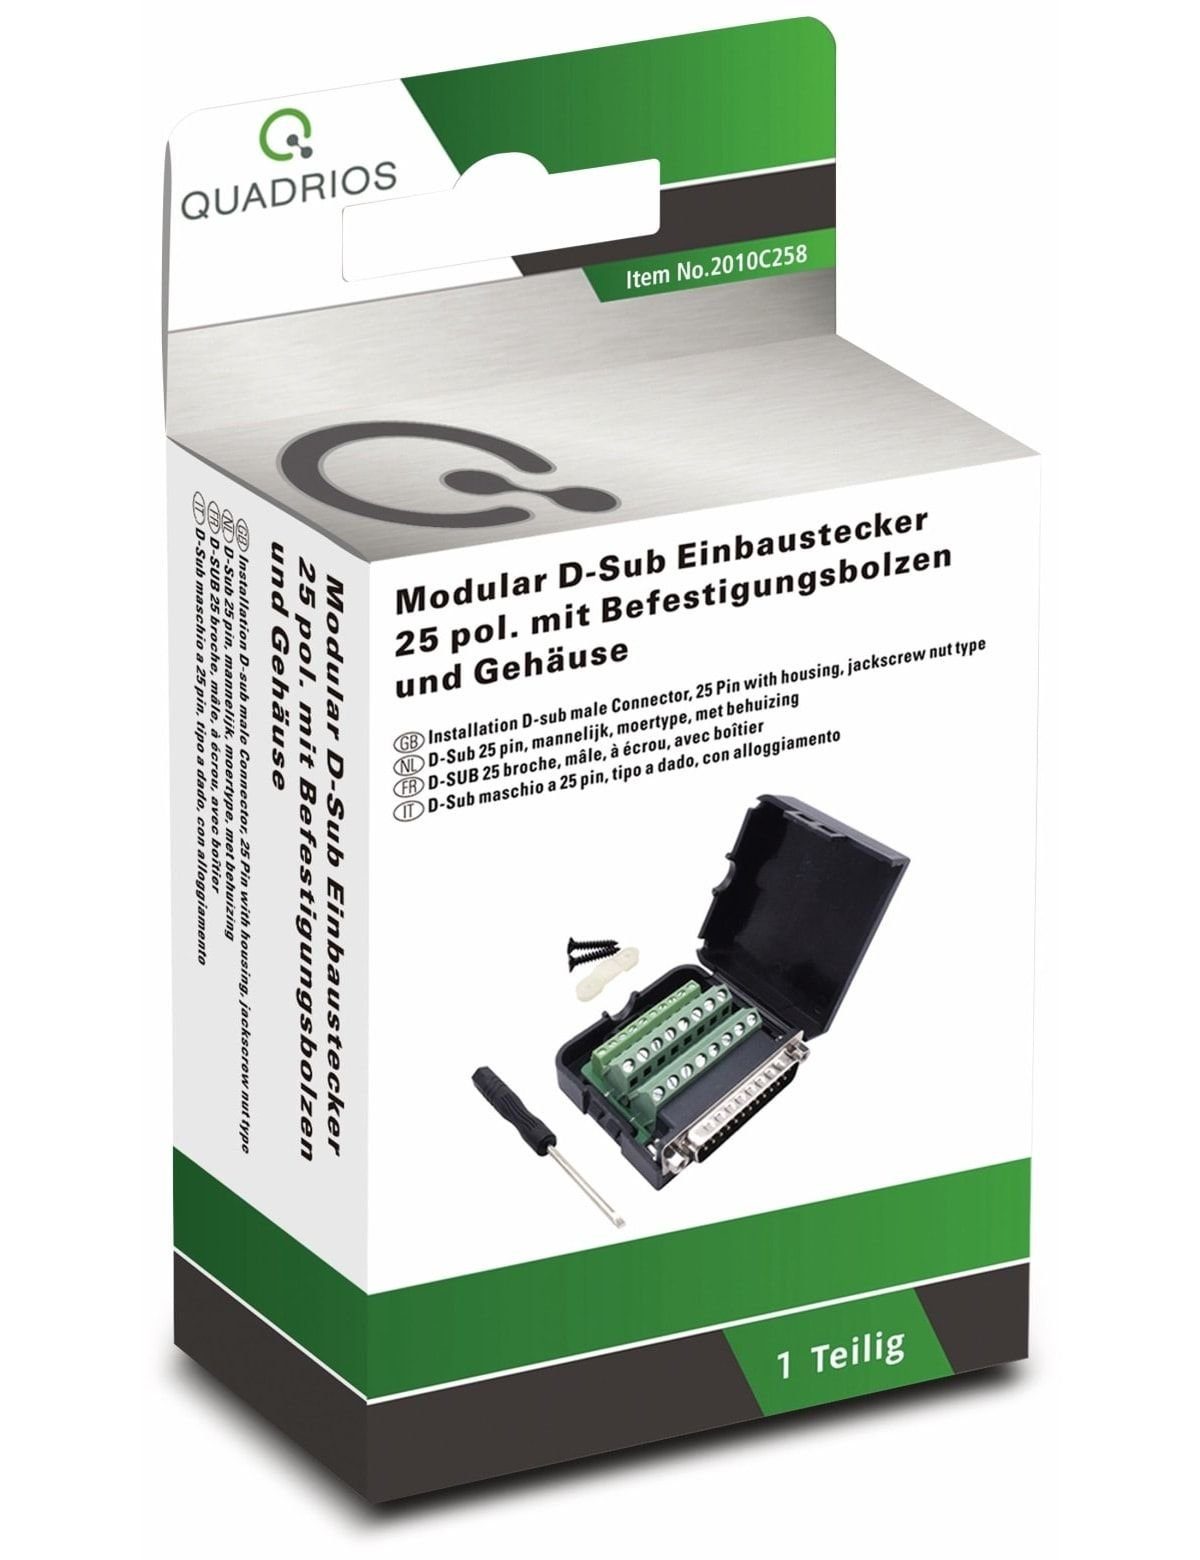 2010C258, QUADRIOS, D-Sub USB-Modular-Set, Klemmen Quadrios